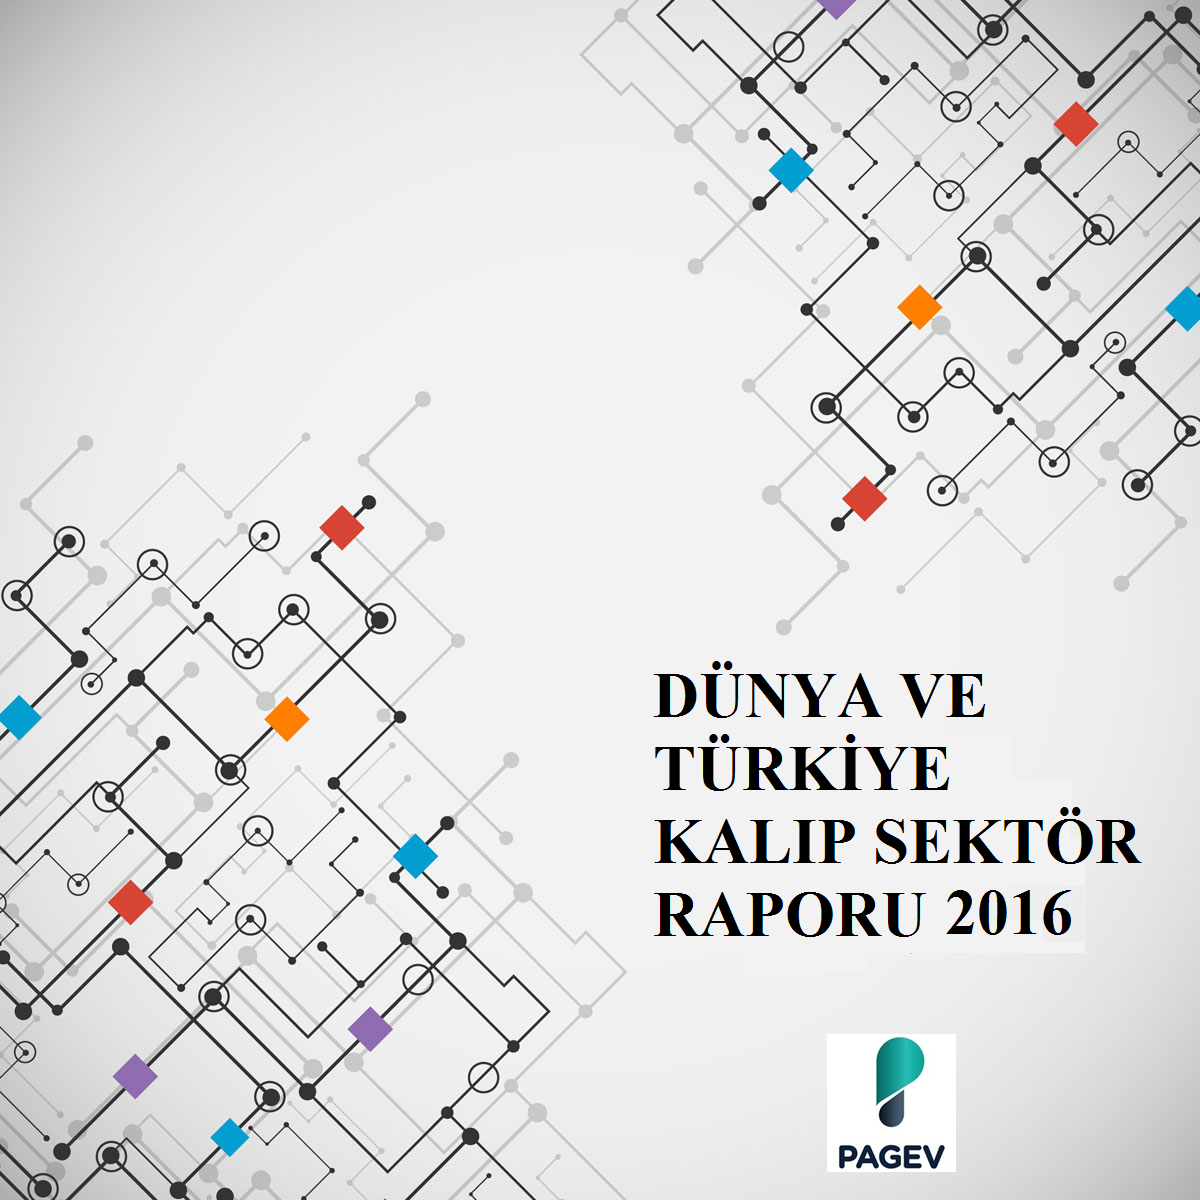 Dünya ve Türkiye Kalıp Sektör Raporu  2016